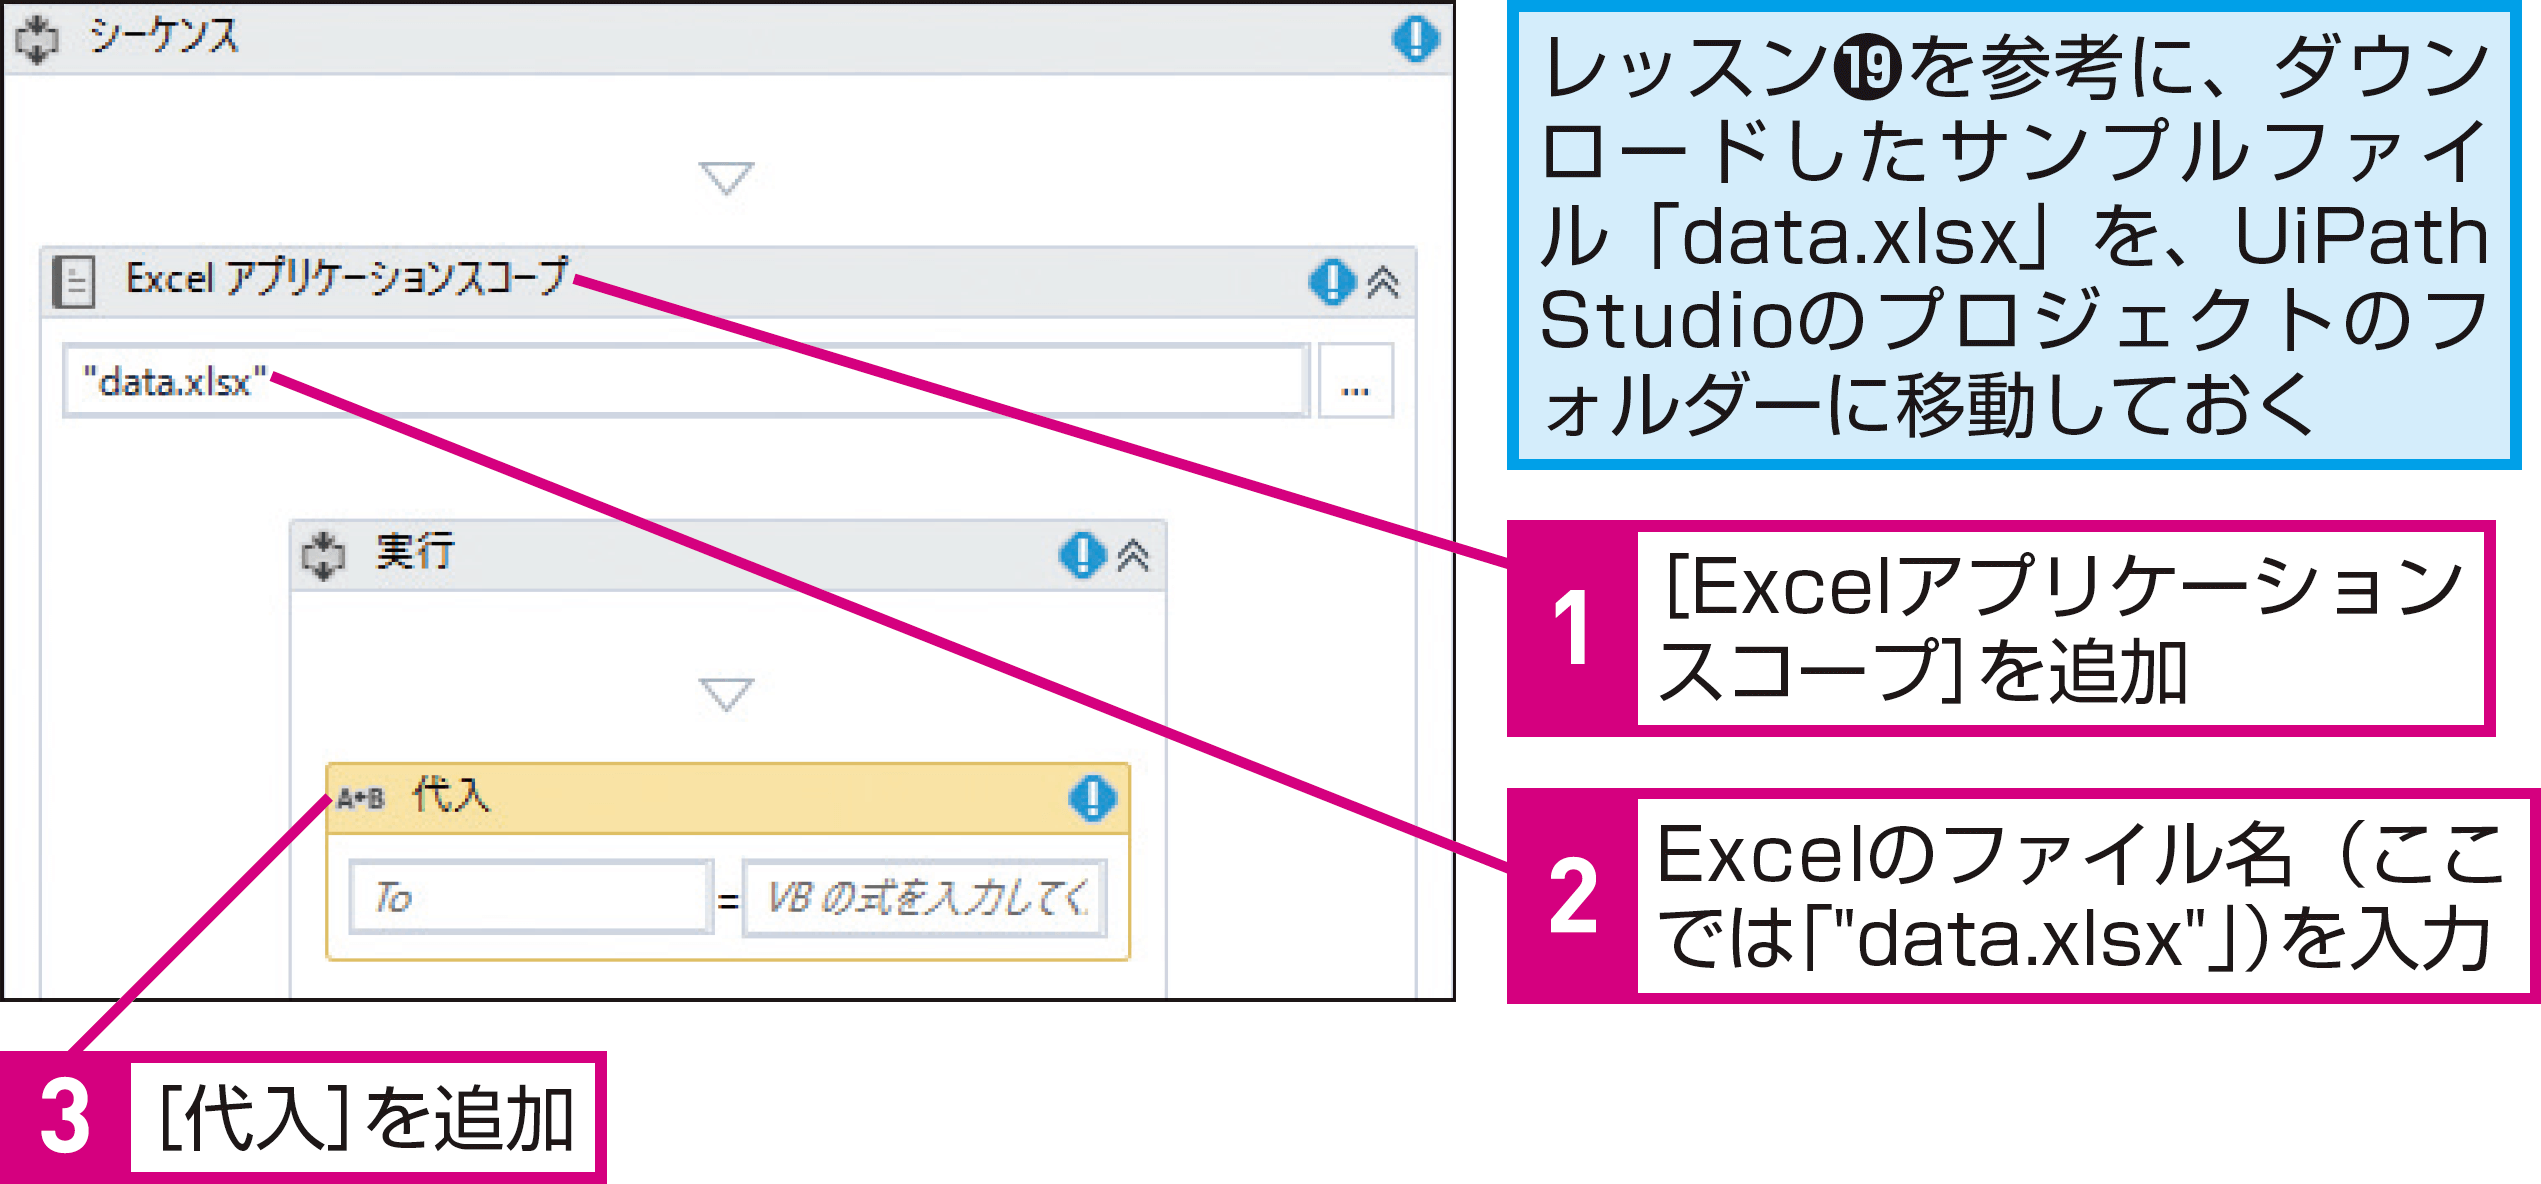 Excelにデータを書き込むには(Excelデータの書き込み） - できるUiPath